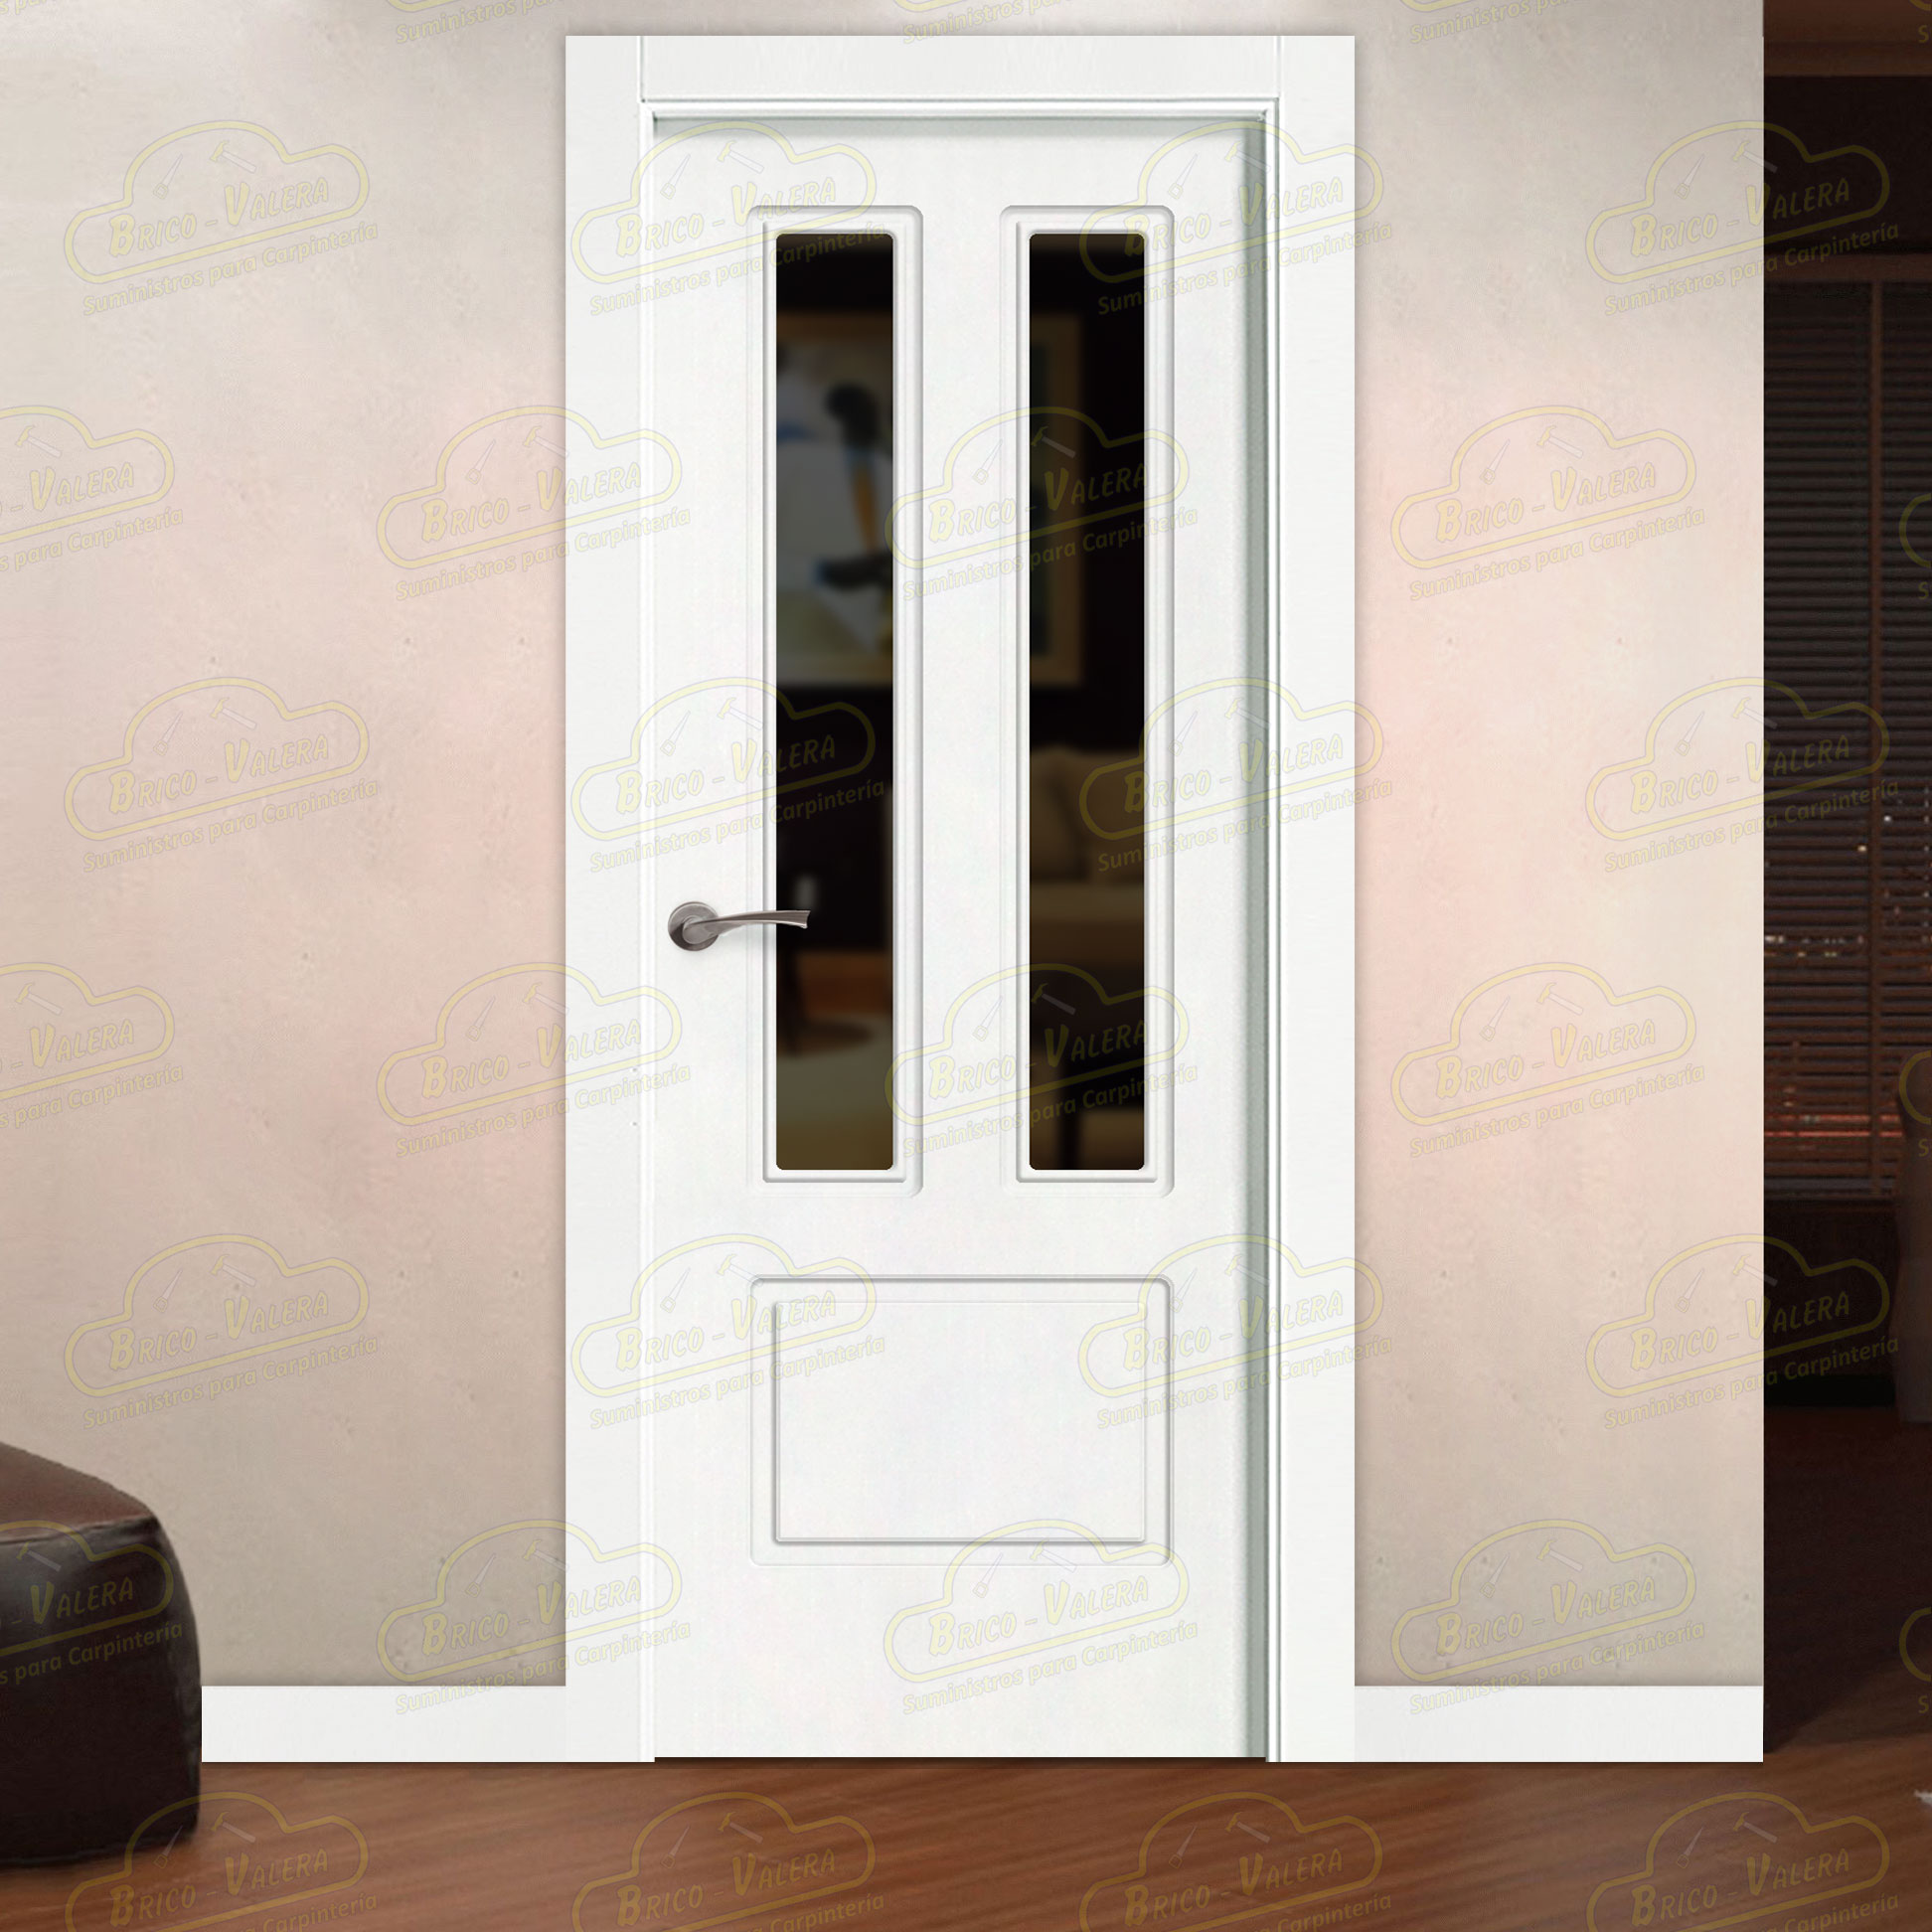 Puerta Premium P21-V2 Lacada Blanca de Interior en Block (Maciza)